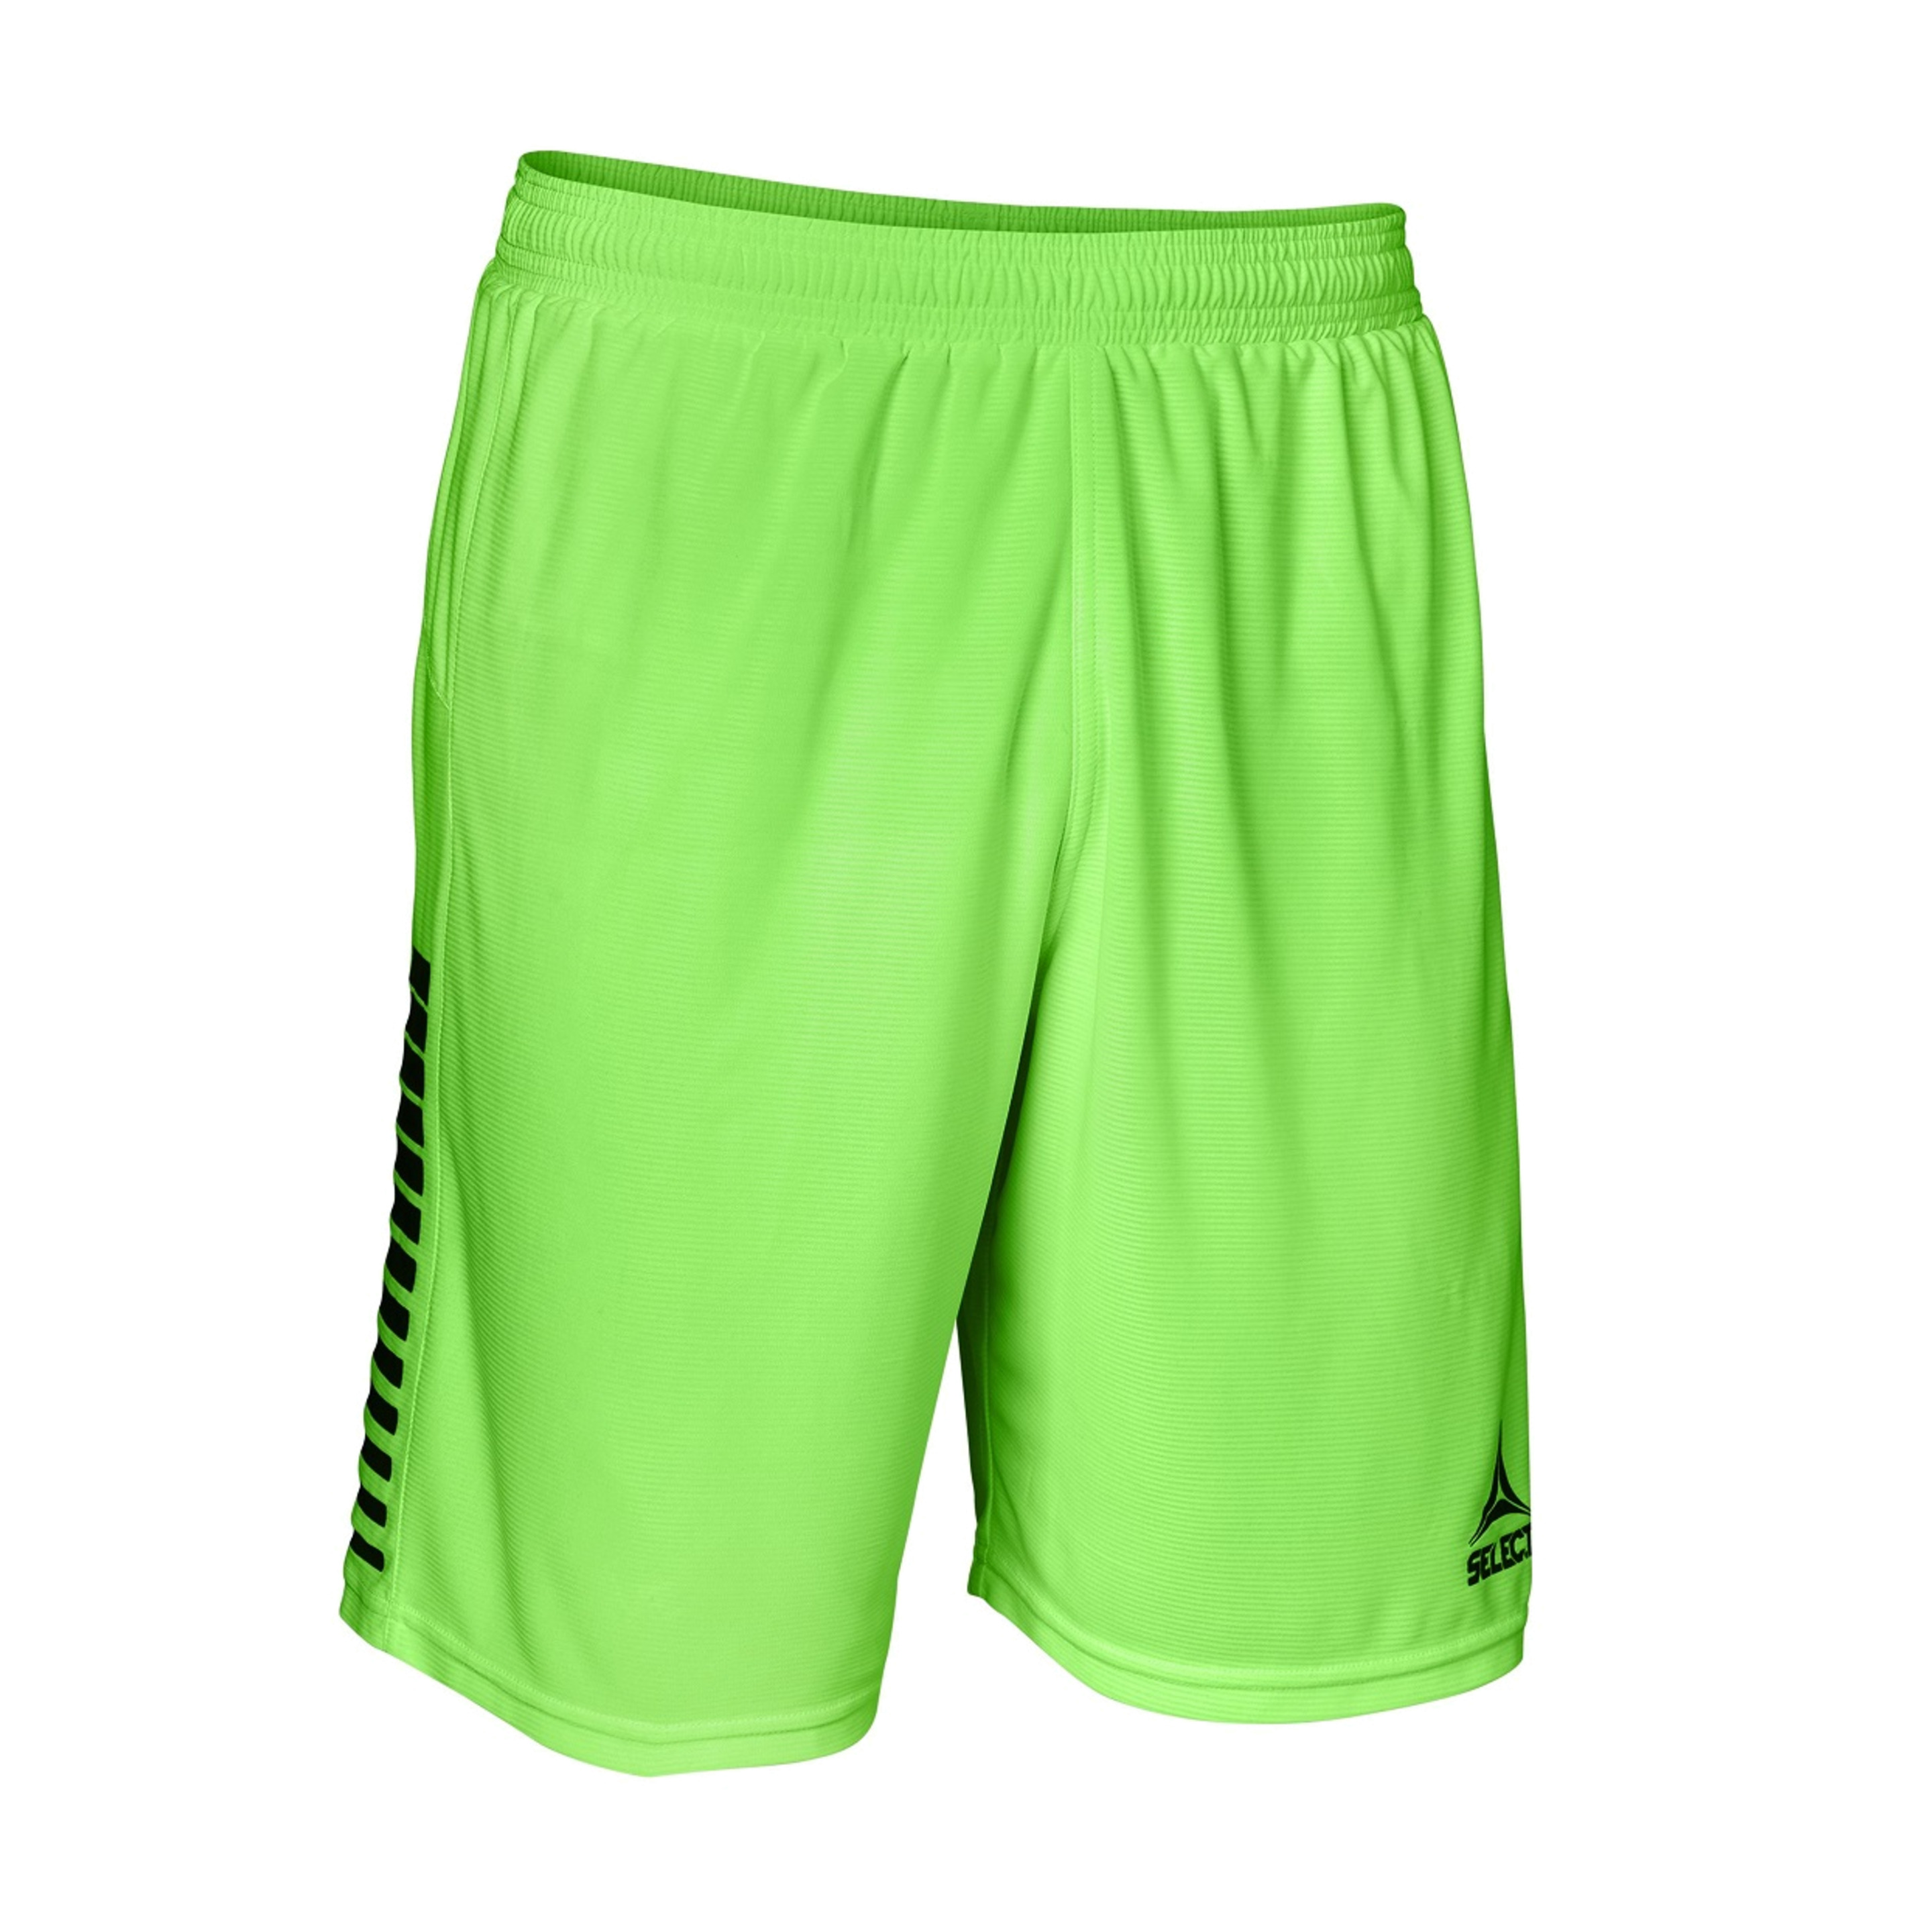 Pantalón Portero Select Brazil - Verde - Pantalón corto deportivo  MKP